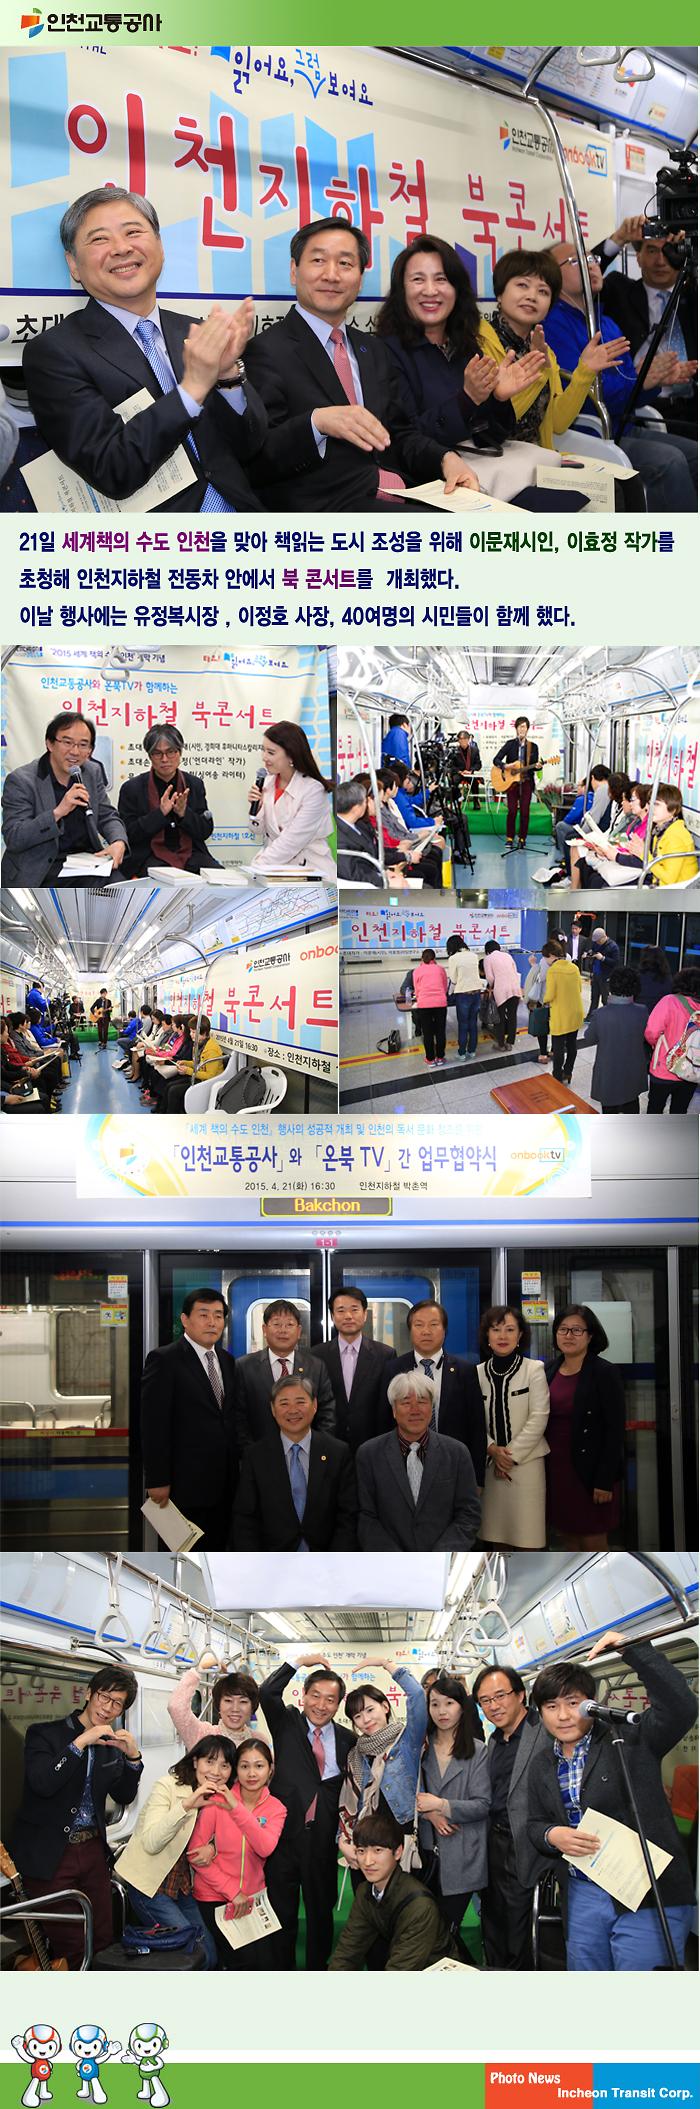 인천지하철 북콘서트 개최 사진